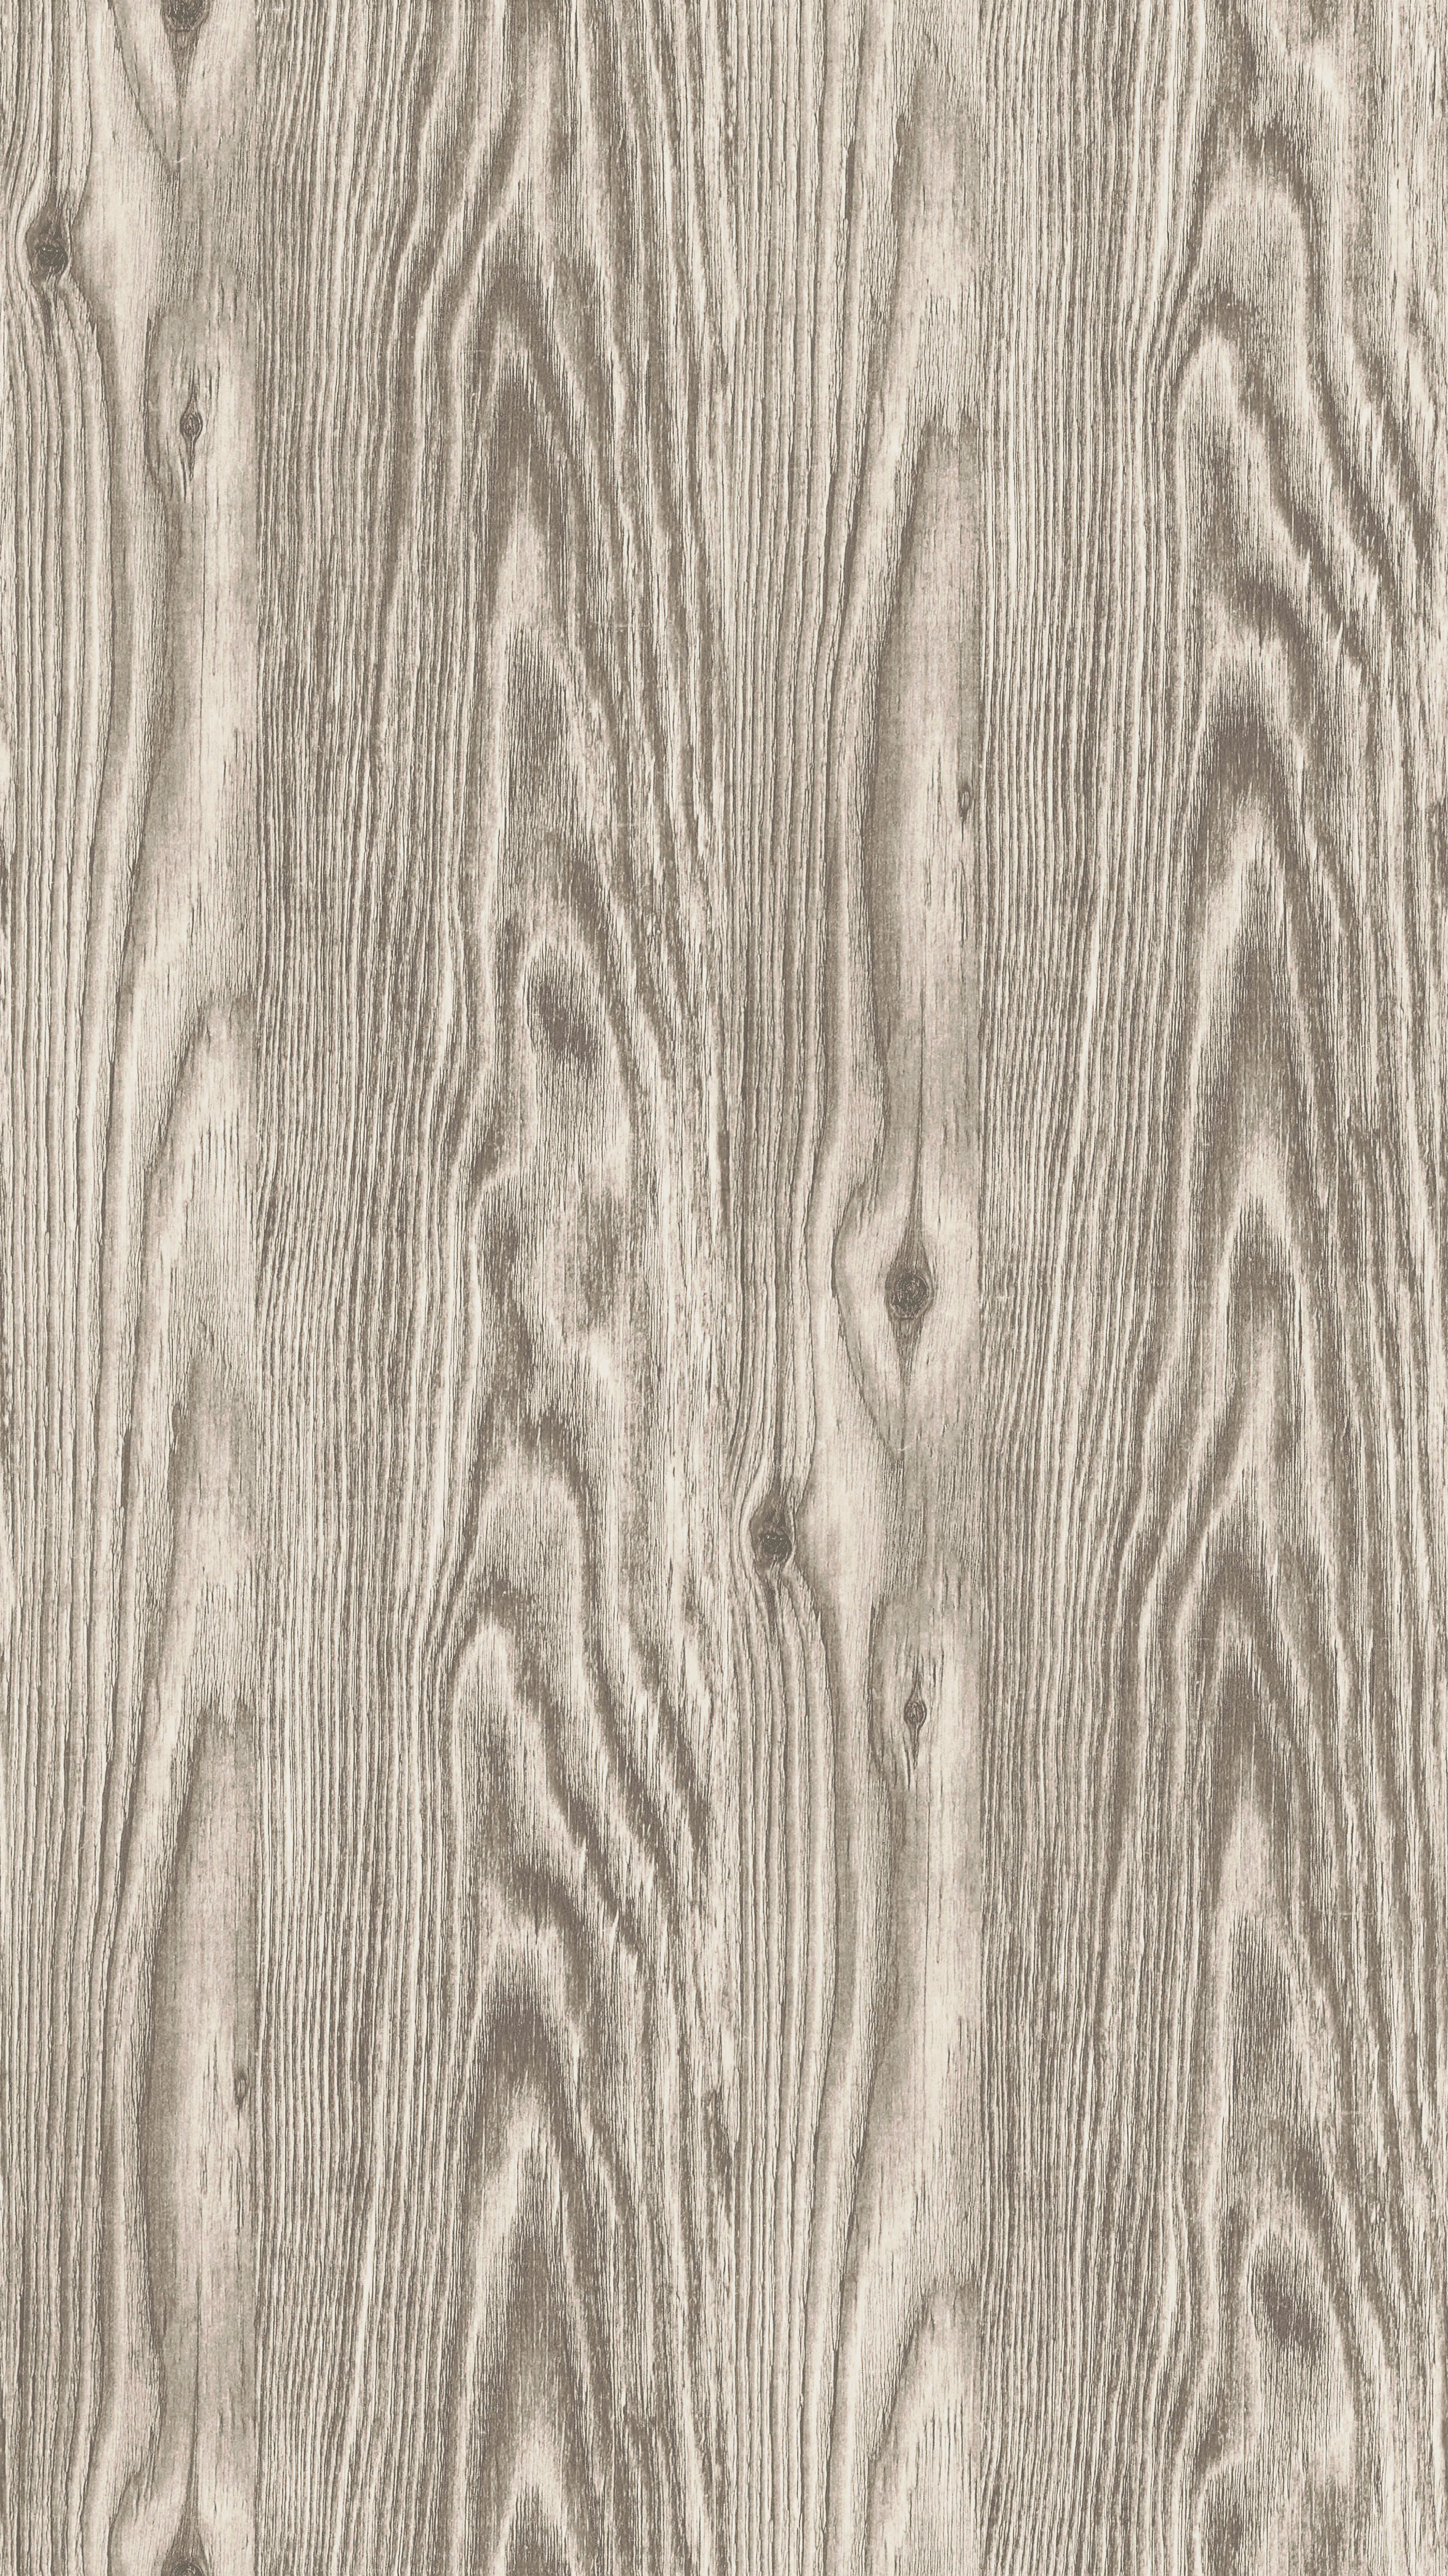 Пленка для термопереноса SWU 49/3 из коллекции деревянных декоров